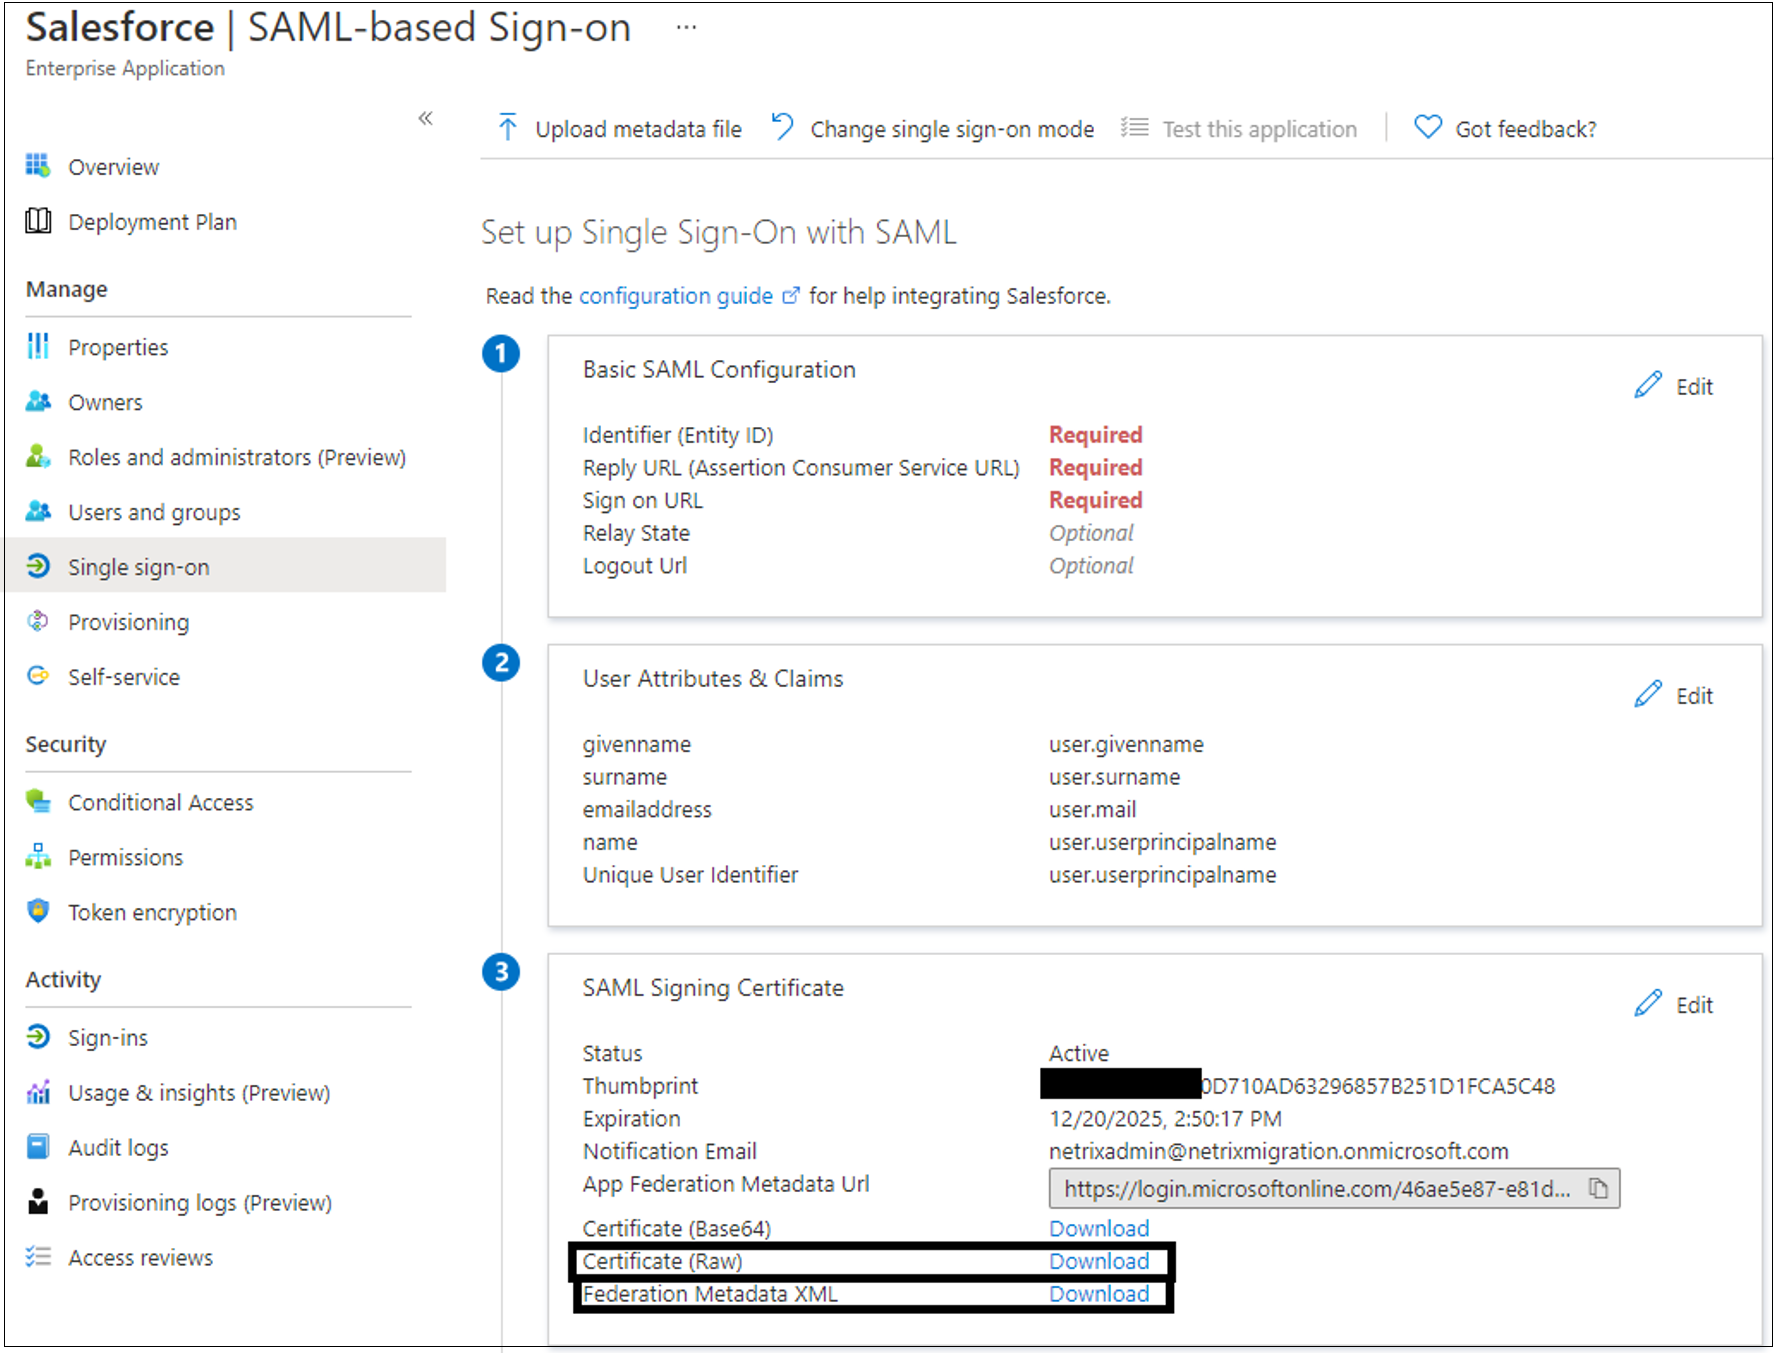 SAML İmzalama Sertifikası altındaki Sertifika (Ham) ve Federasyon Meta Verileri XML girişlerinin ekran görüntüsü.